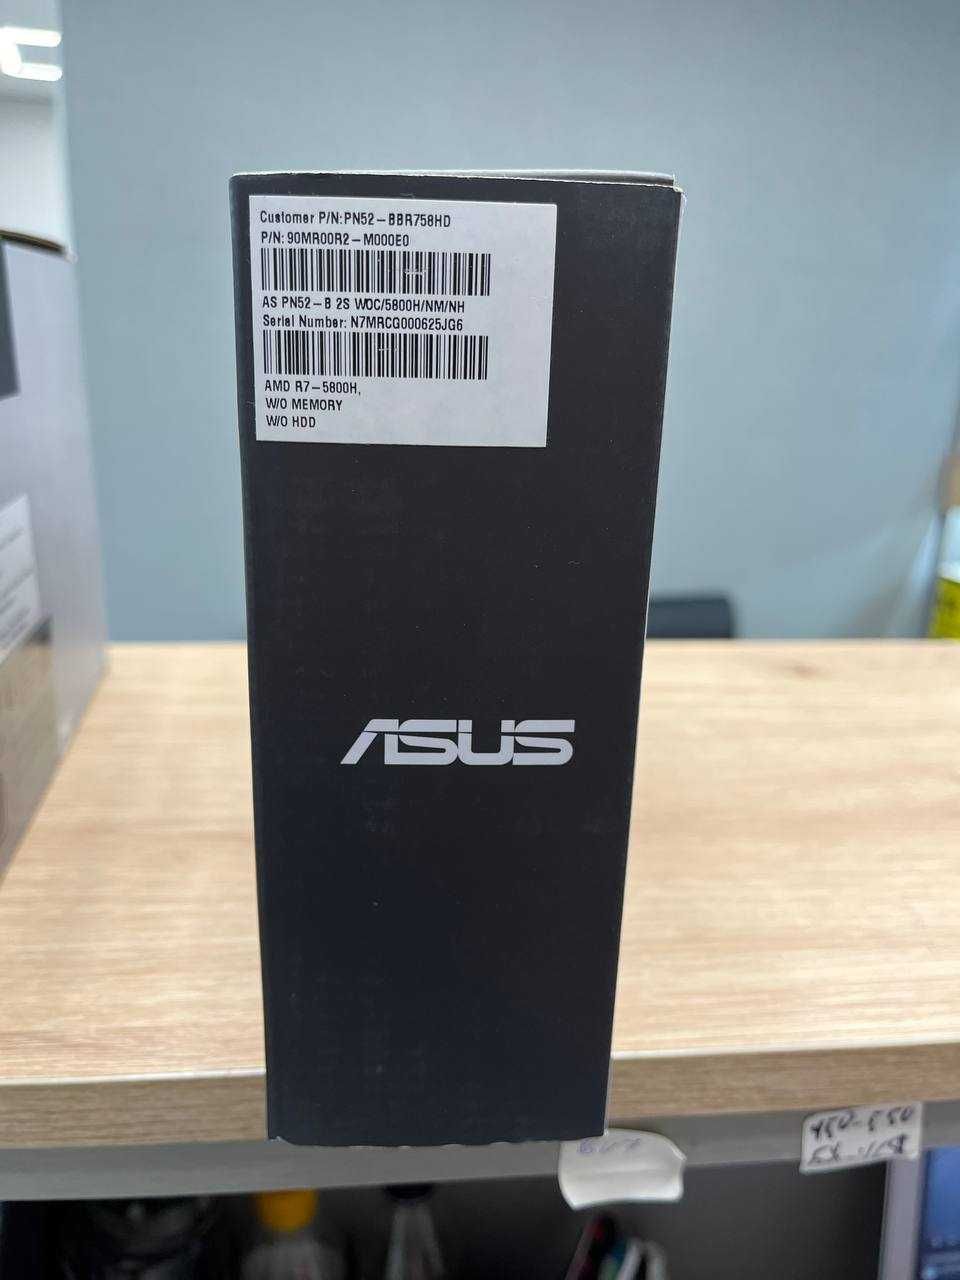 Міні ПК Mini PC ASUS PN52 Ryzen 9/7/5 Нові SSD|OЗУ доукомплектовується